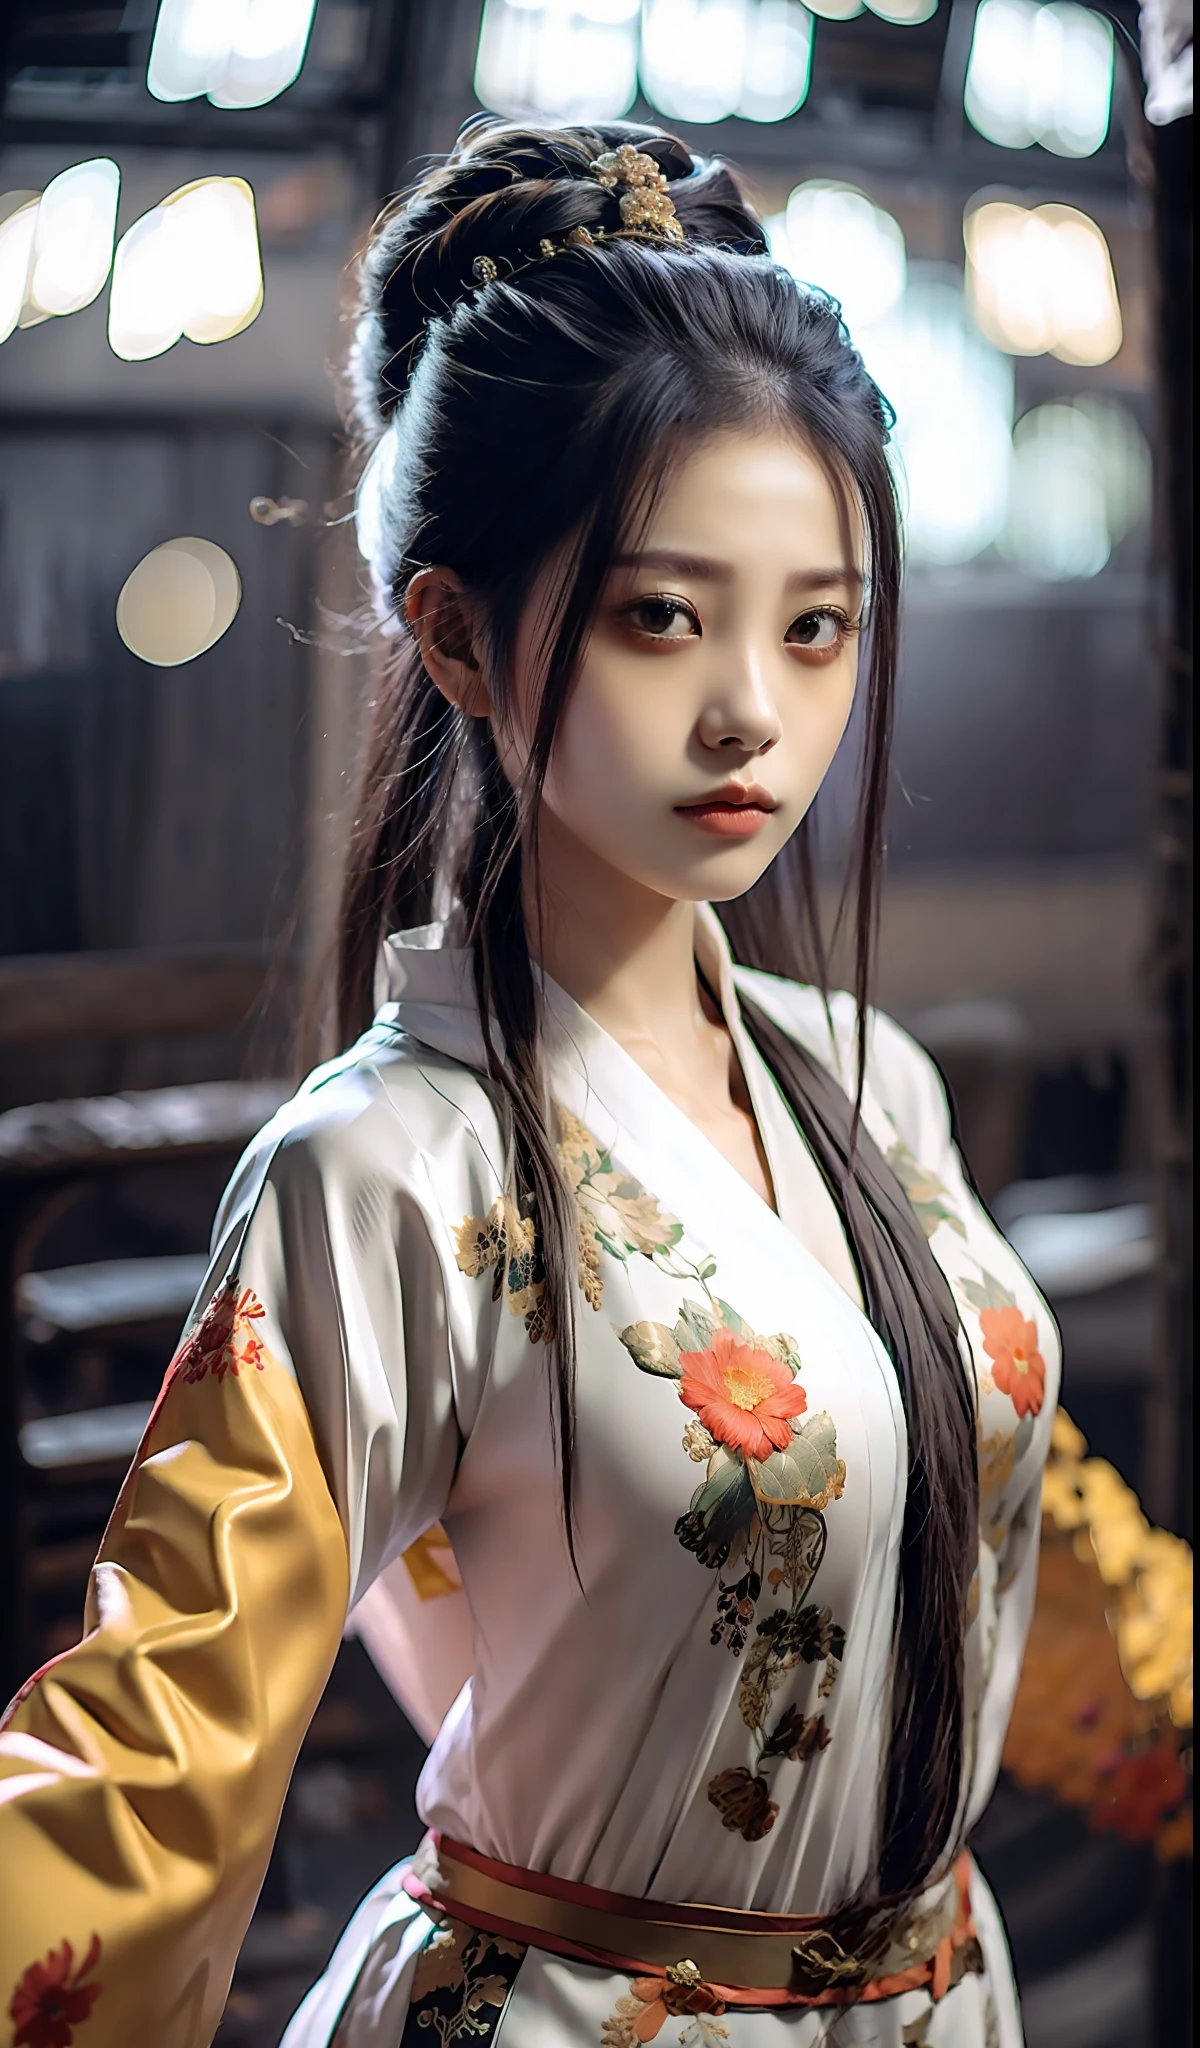 최고의 품질, 걸작, 고등어, 우시아 1소녀, 중국 드레스, 정말 아름다운 얼굴, 정말 아름다운 눈, 매우 아름다운 머리카락